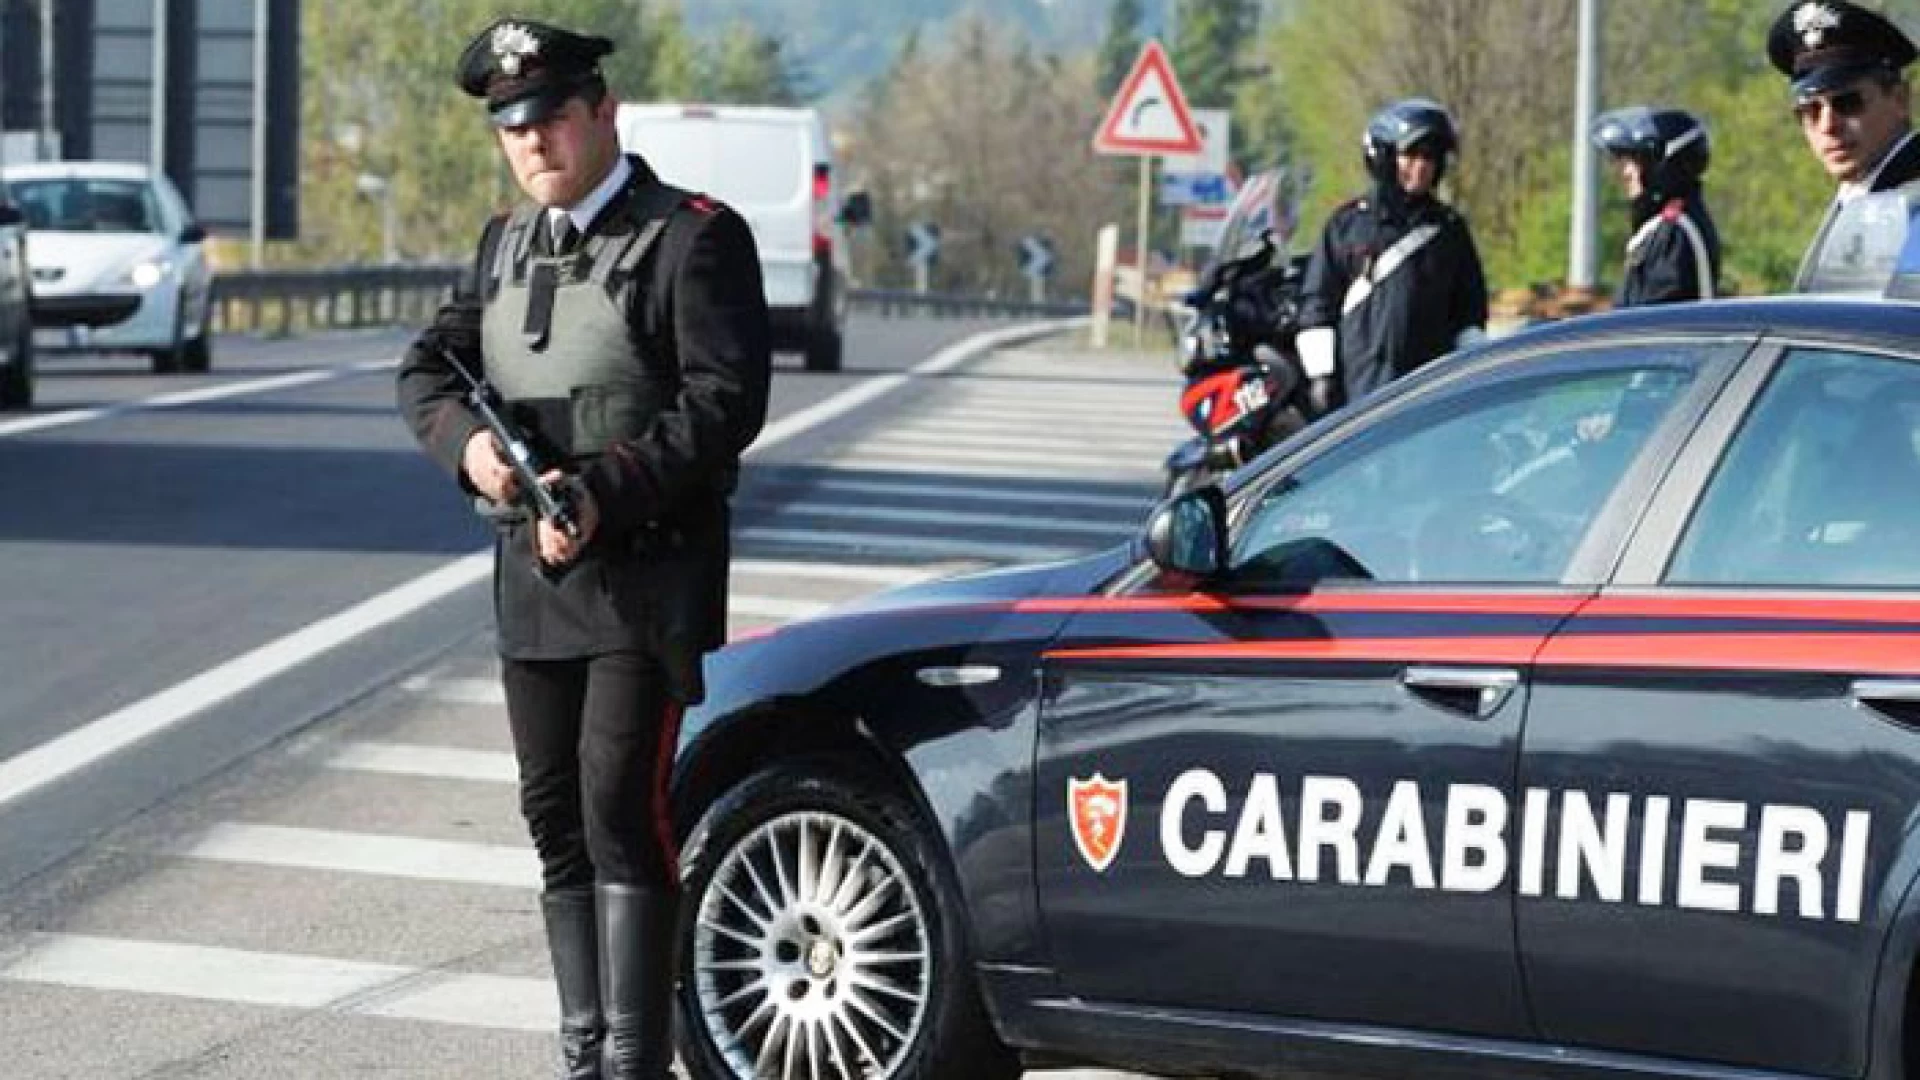 Isernia: Rapina a mano armata presso l’abitazione del notaio Giuseppe Gamberale, pregiudicato arrestato dai Carabinieri.